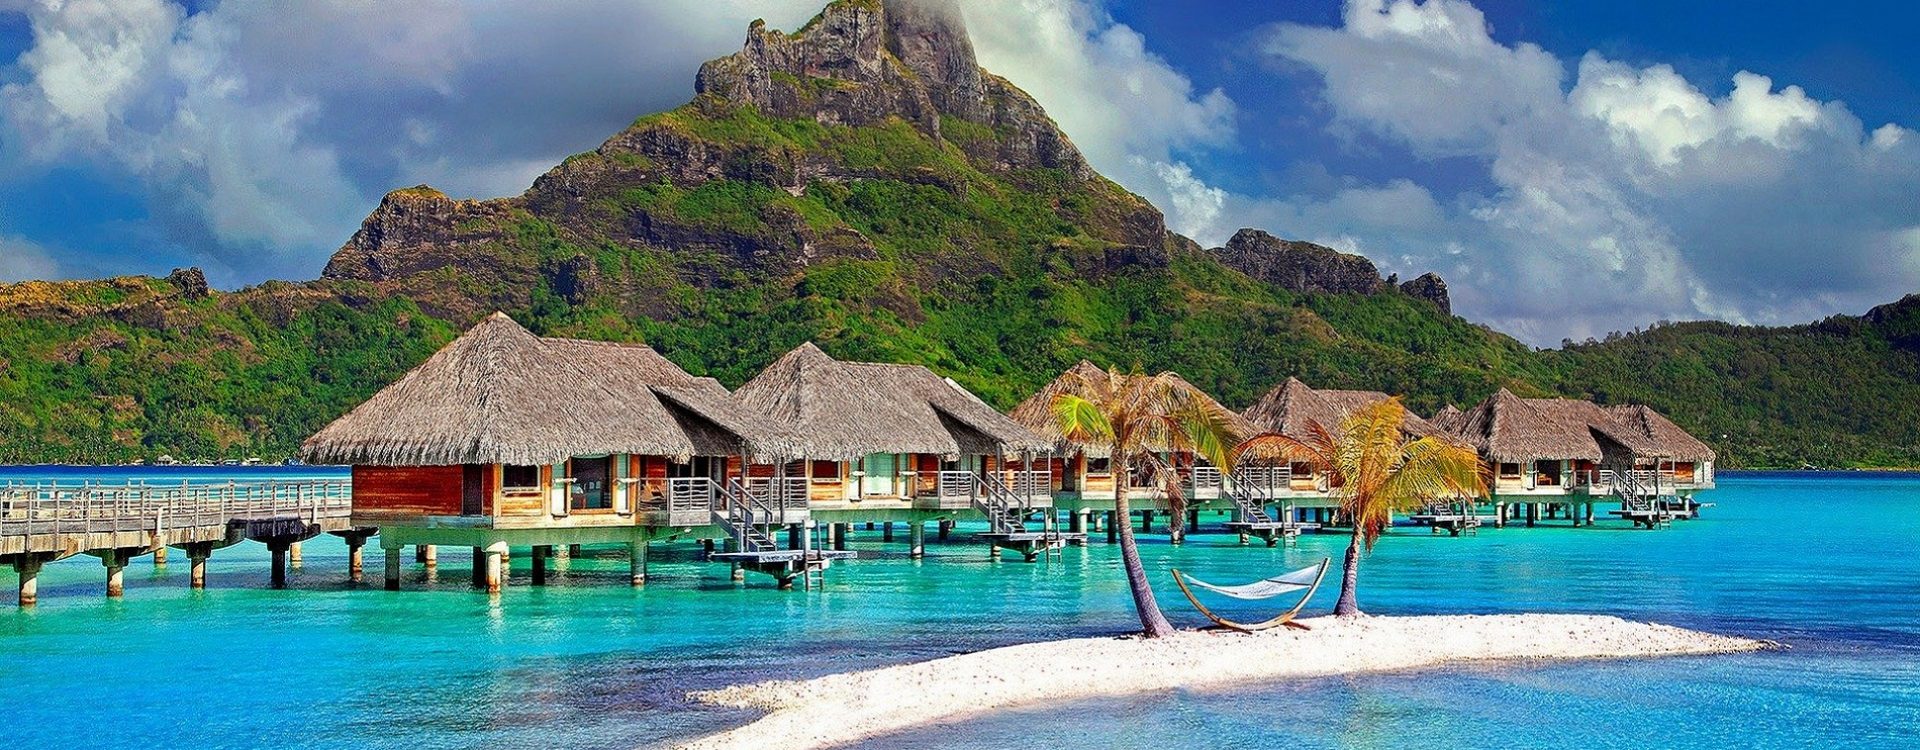 Putovanje Bora Bora - doživite jedinstveni raj na dalekom putovanju u bungalovima na plaži